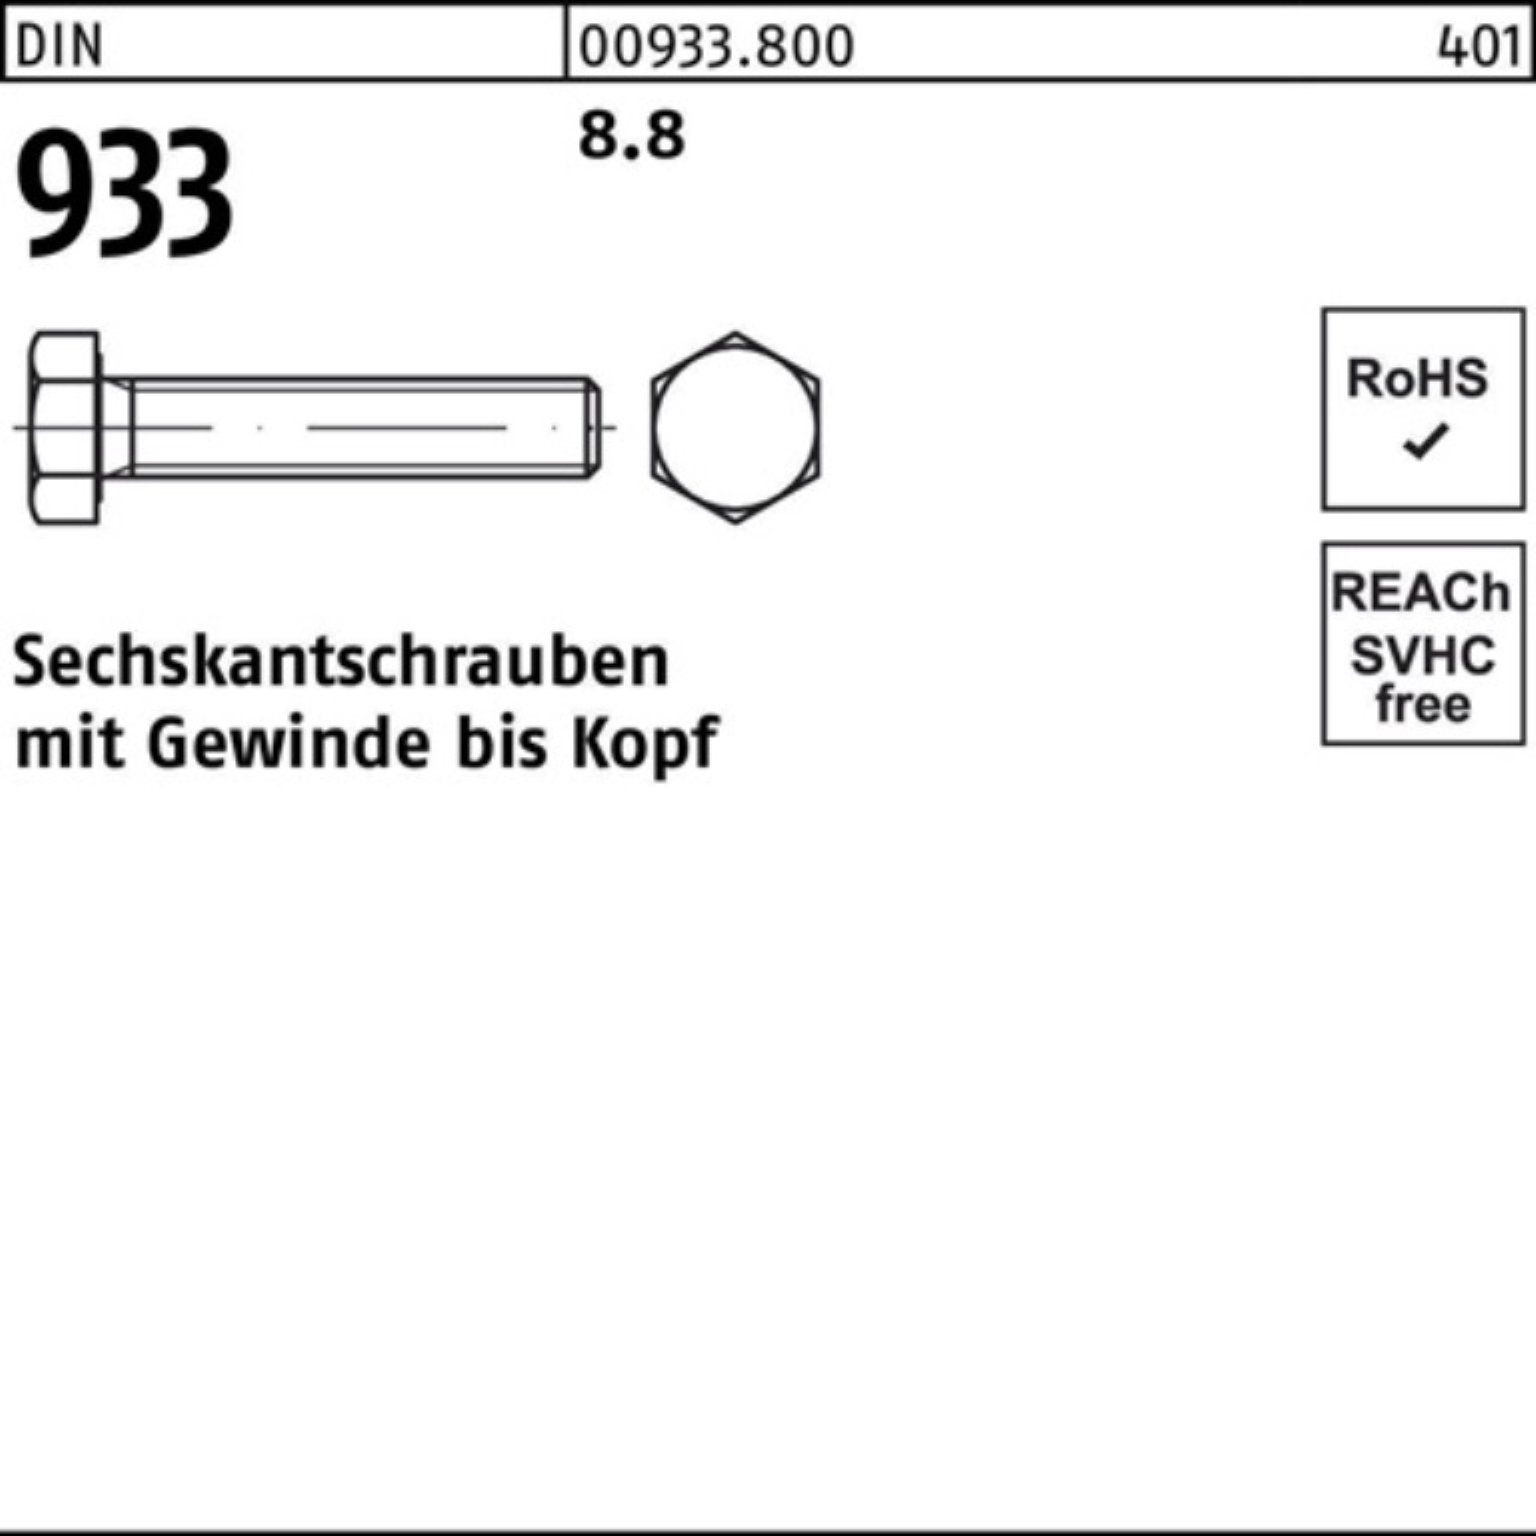 Reyher Sechskantschraube VG DIN DIN Sechskantschraube Stück 933 M12x Pack 75 933 50 100er 8.8